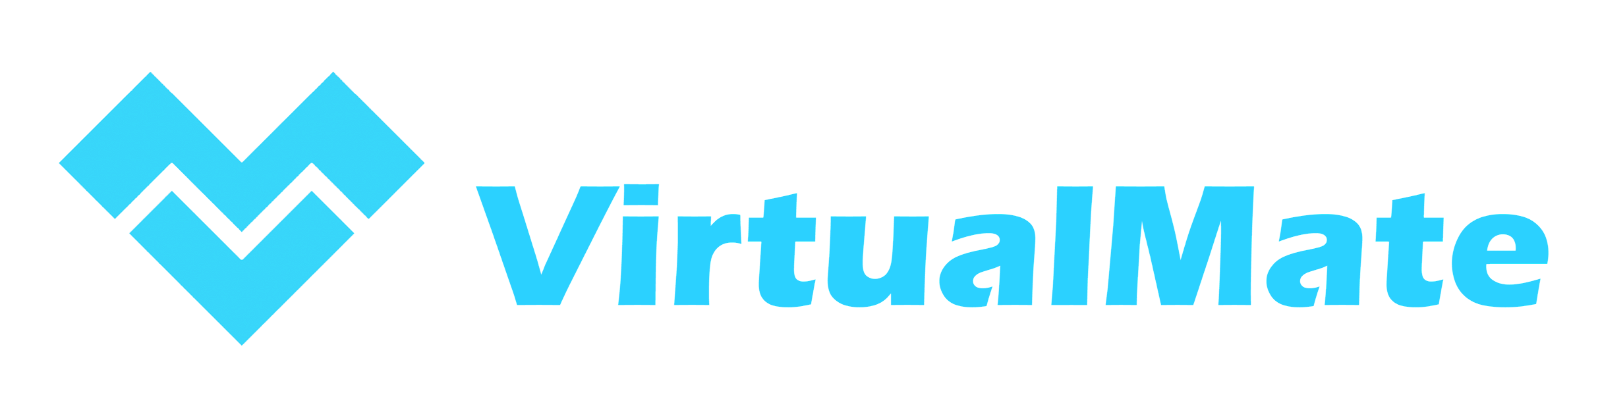 virtual mate